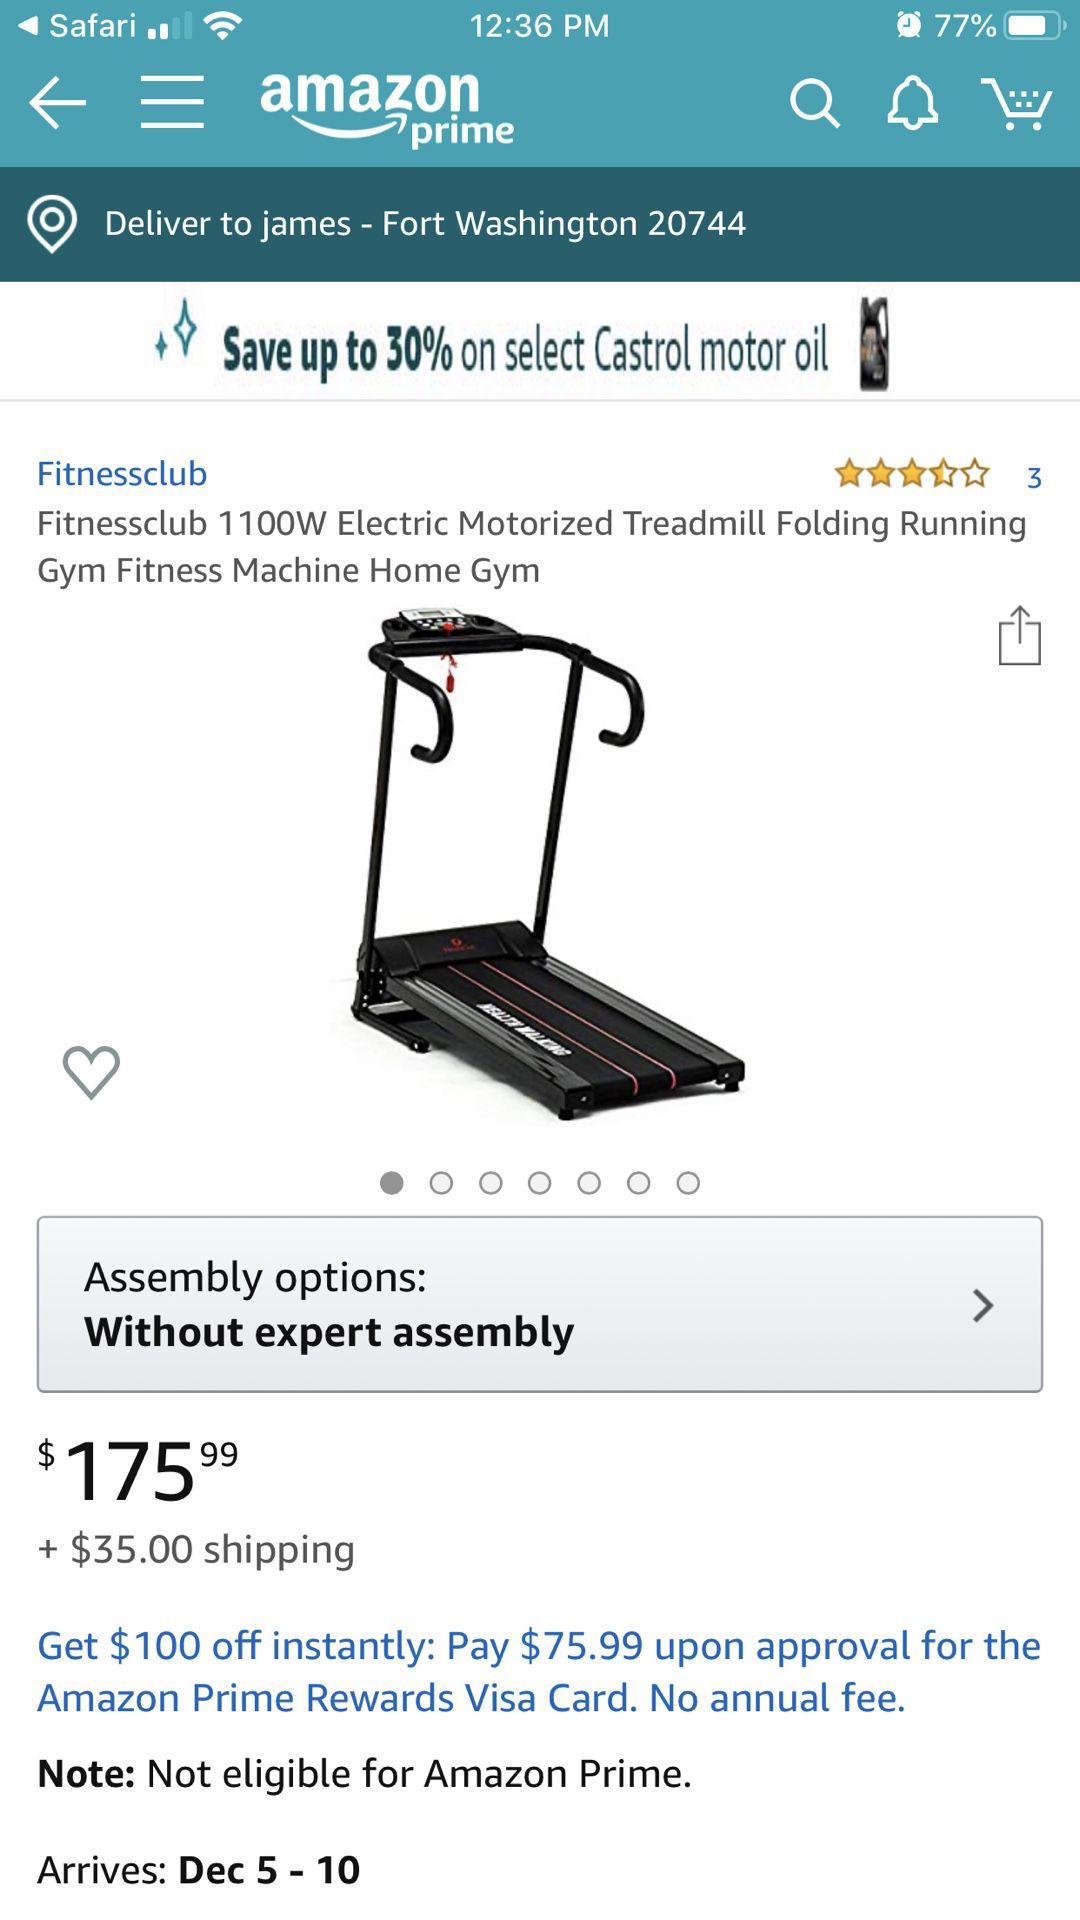 Fitnessclub folding treadmill